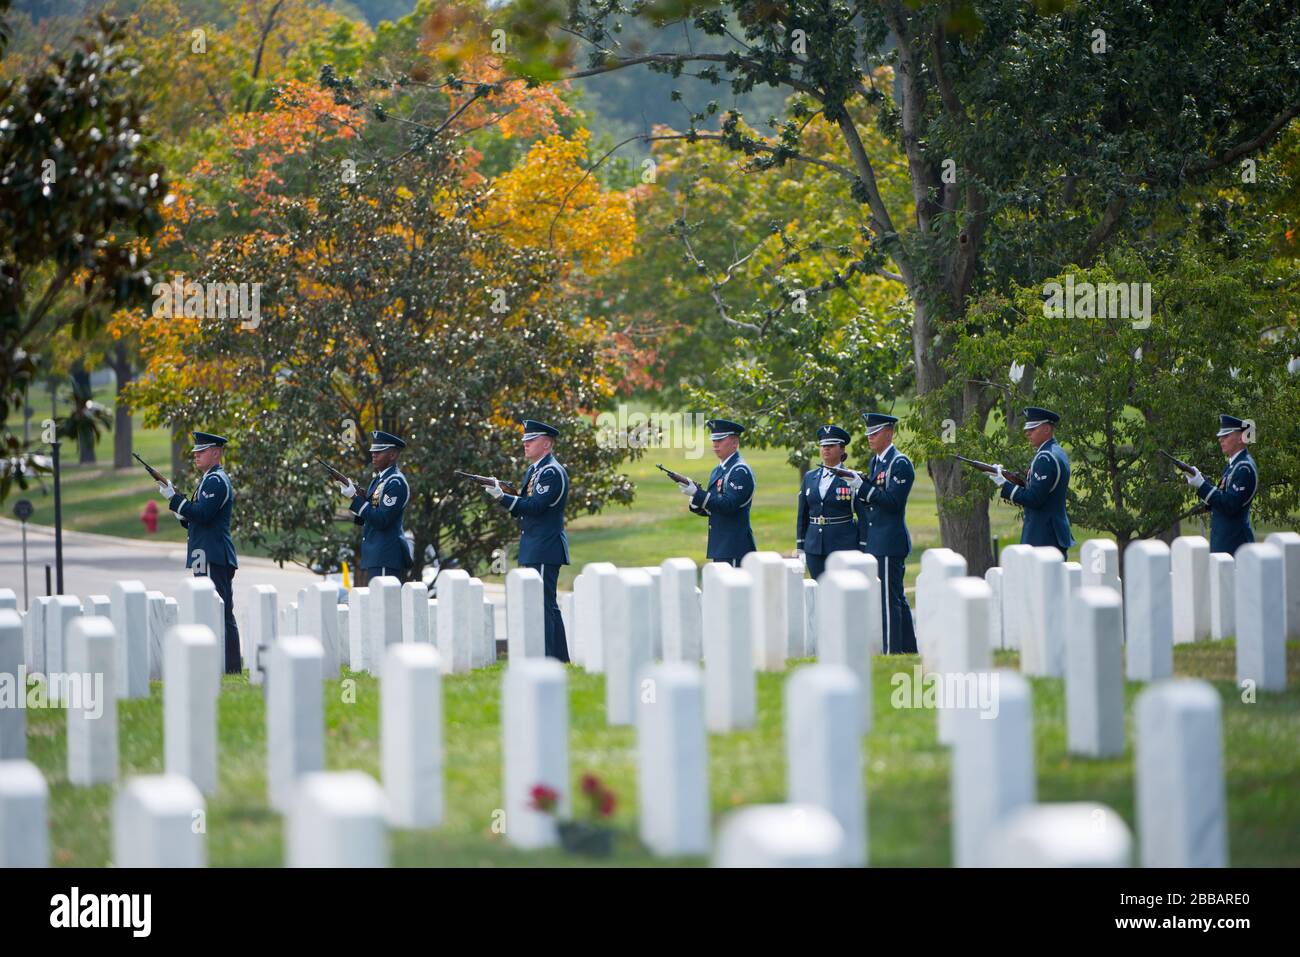 'La Guardia de honor de la Fuerza Aérea de los EE.UU., la banda de la Fuerza Aérea de los EE.UU. Y el regimiento de Infantería de los EE.UU. (La Guardia Vieja) Caisson Platoon participaron en un funeral de honor completo para el Coronel Robert Anderson de la Fuerza Aérea de los EE.UU. En la sección 55 del Cementerio Nacional de Arlington, Arlington, Virginia, 6 de octubre de 2017 Anderson, originalmente de Battle Creek, Michigan, se fue perdiendo el 6 de octubre de 1972 cuando su F-40 se estrelló en el norte de Vietnam. Sus restos fueron identificados el 22 de octubre de 1998. (EE.UU Foto del ejército de Elizabeth Fraser / Cementerio Nacional de Arlington / publicado); 6 de octubre de 2017, 14:13; Funeral de honor completo para el Coronel Robert de la Fuerza Aérea de los Estados Unidos Foto de stock